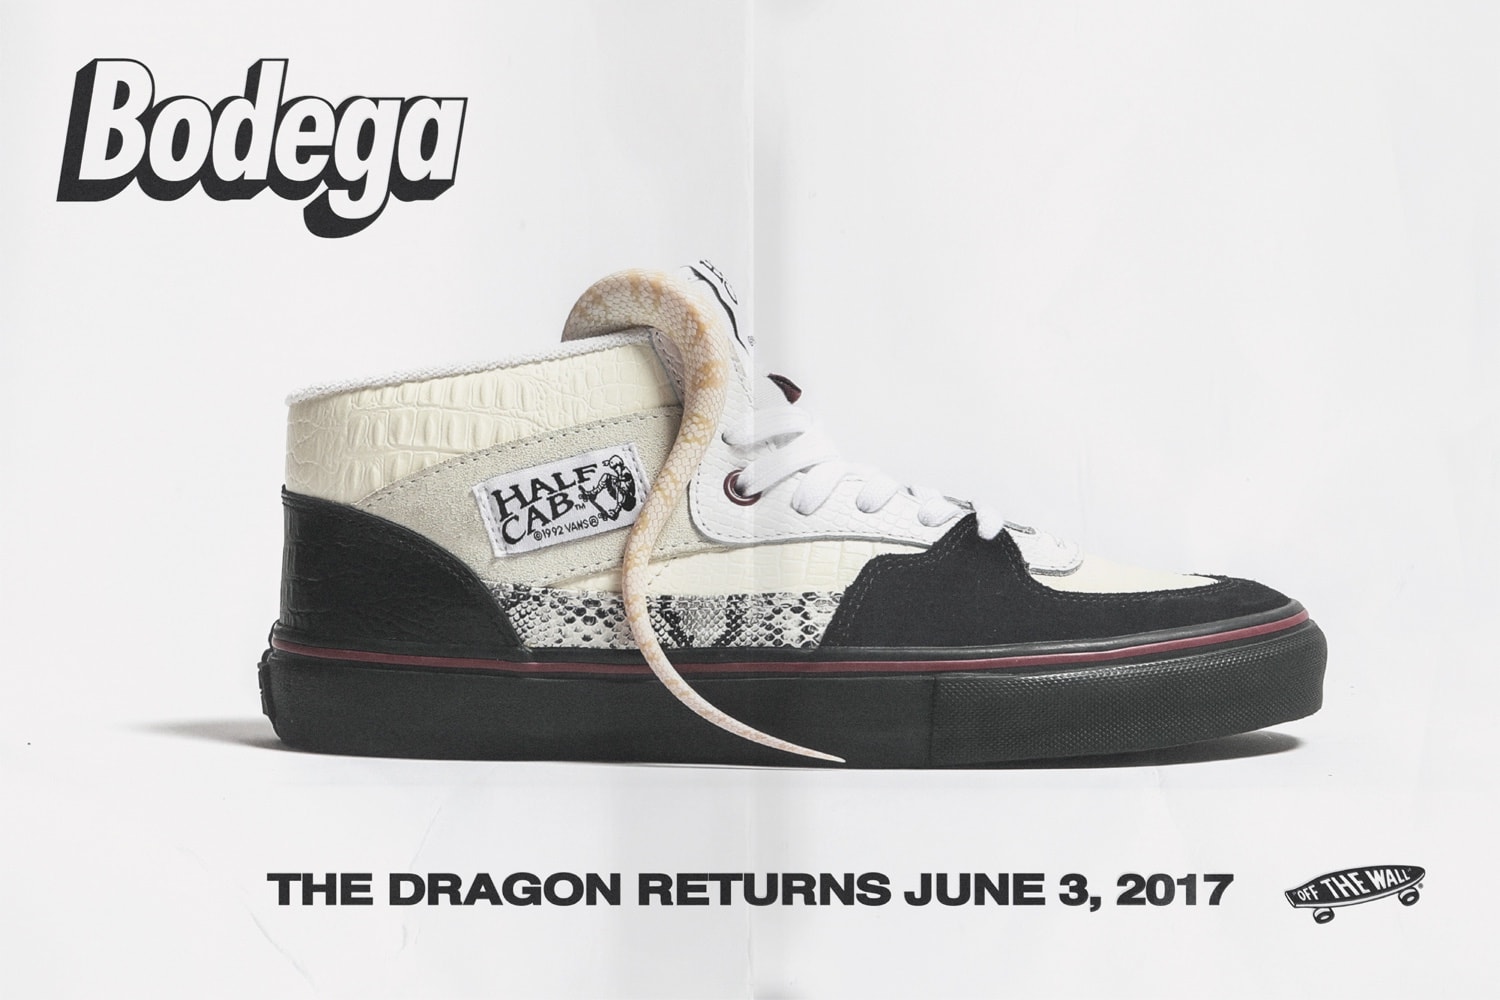 반스 보데가 2017 캡슐 컬렉션 Vans Bodega Return of the Dragon Capsule Collection video